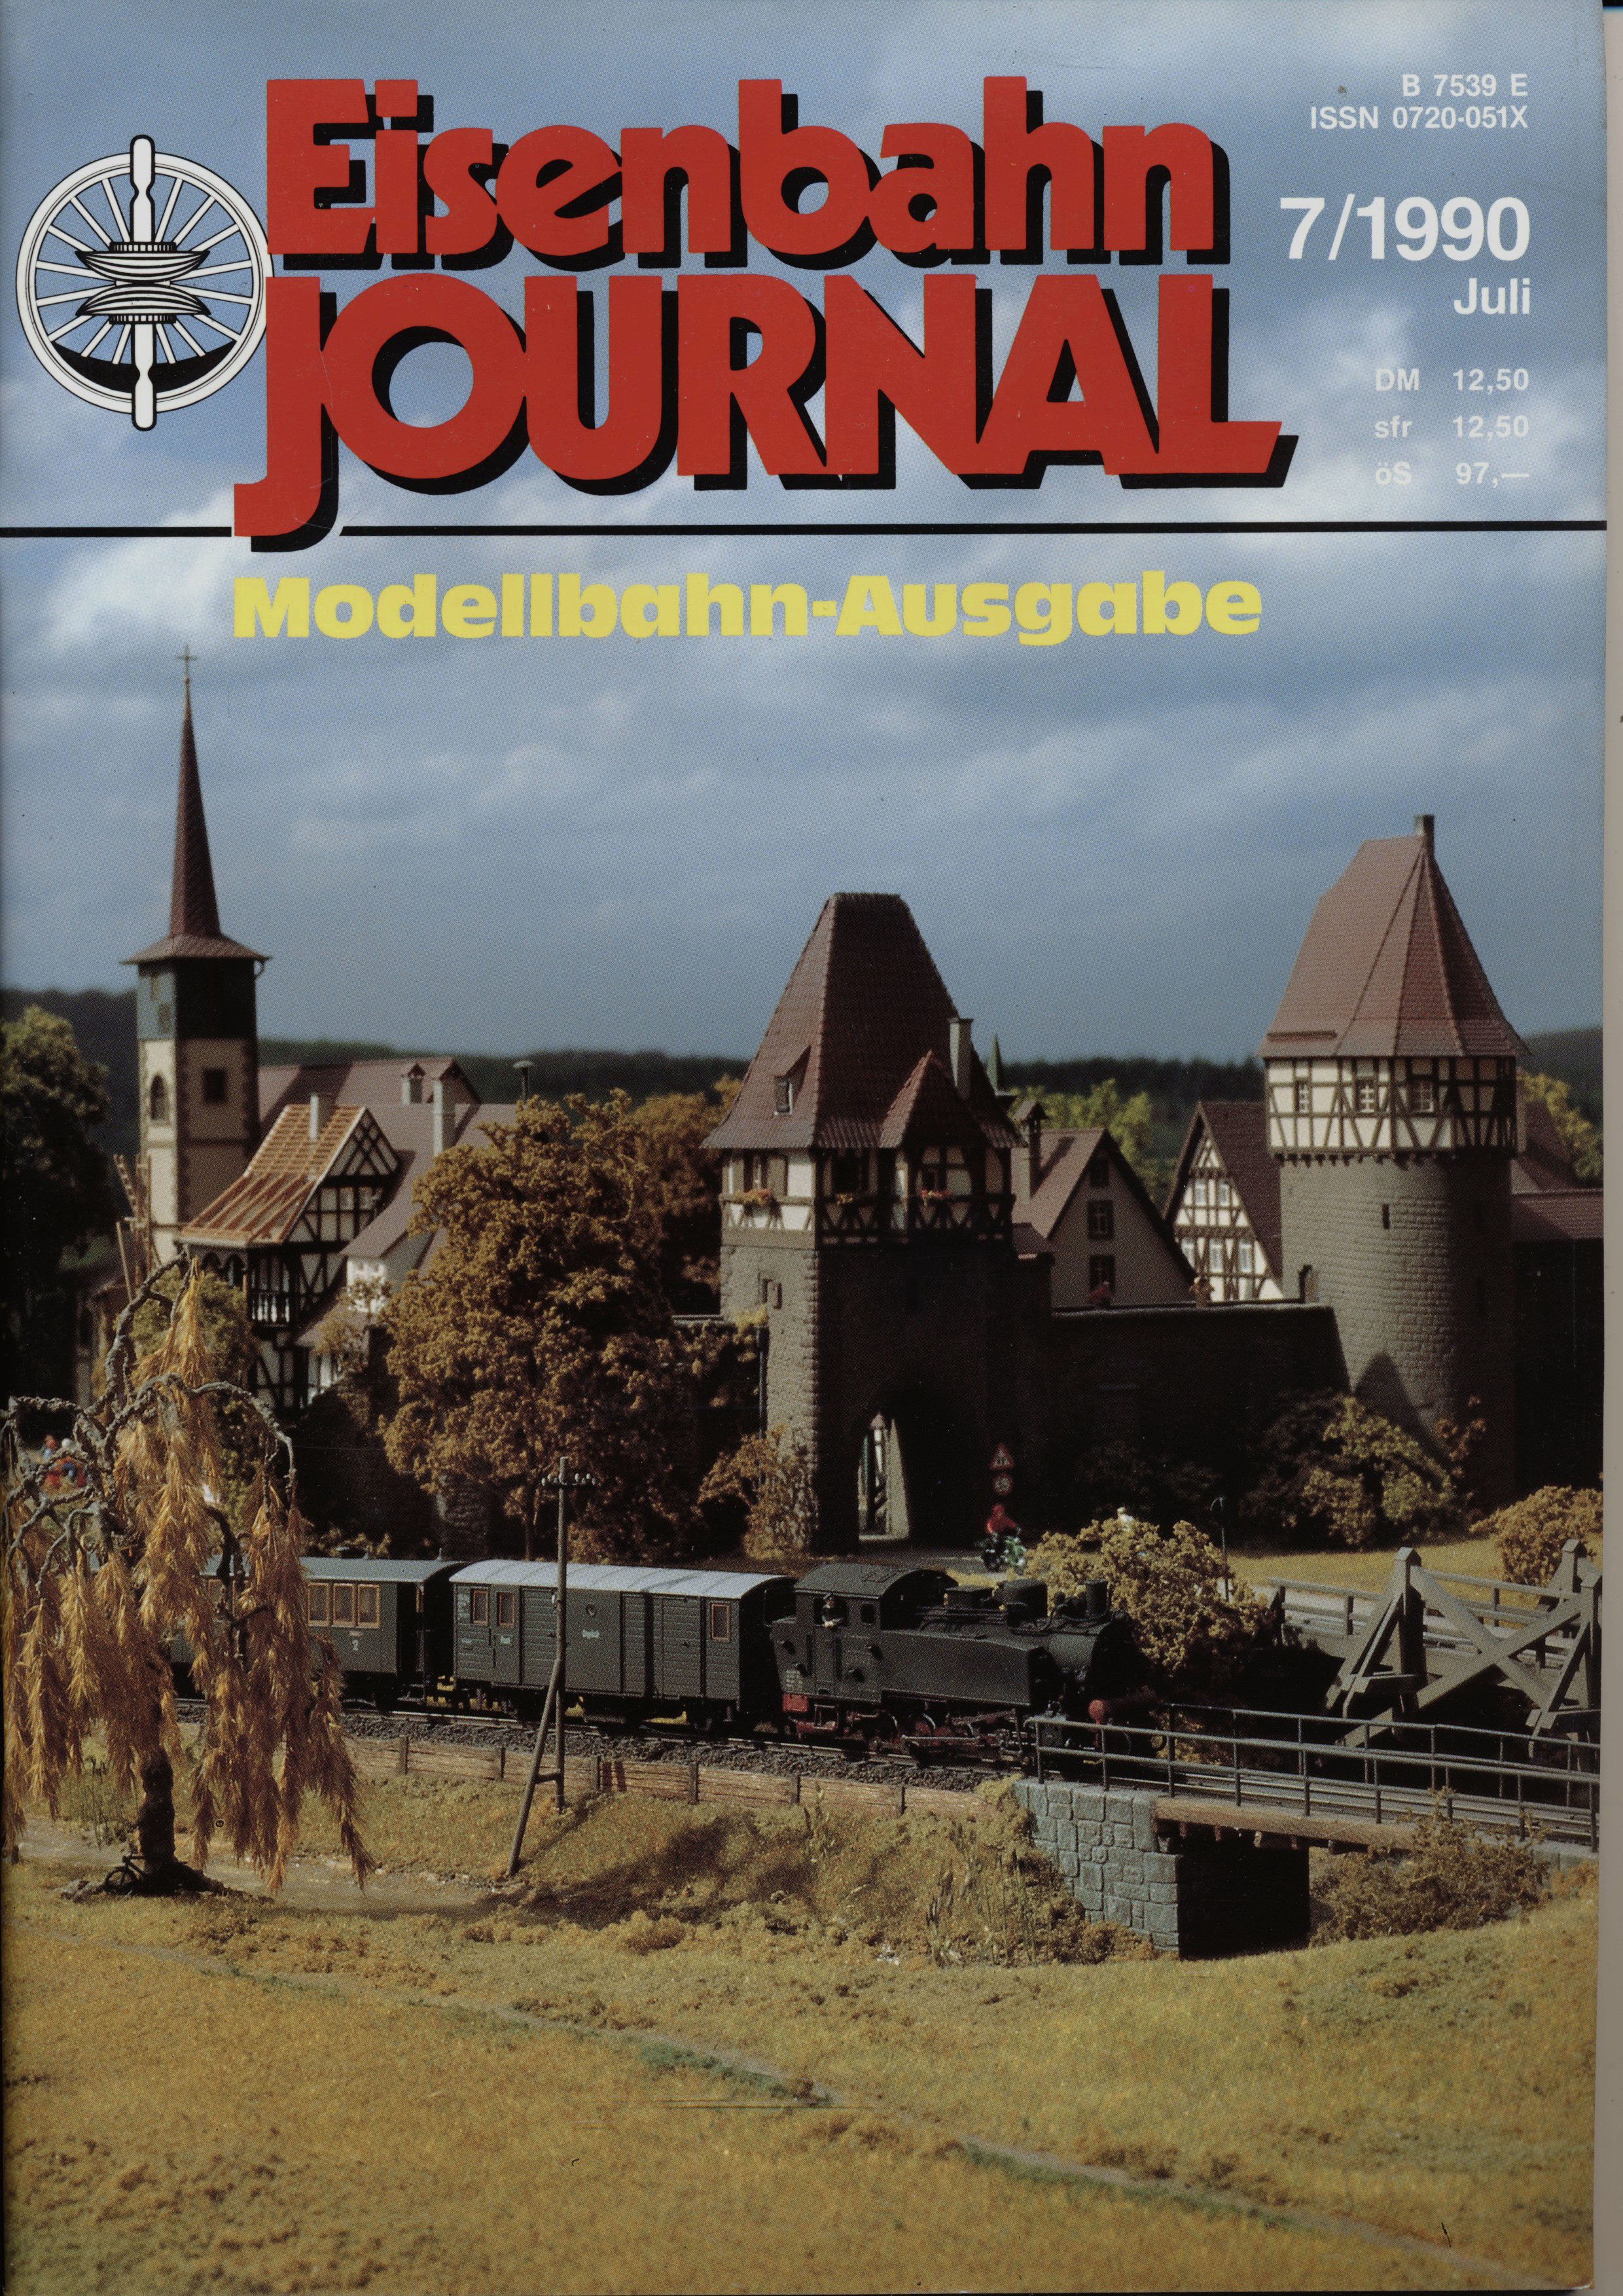   Eisenbahn Journal Heft 7/1990 (Juli 1990): Modellbahn-Ausgabe. 